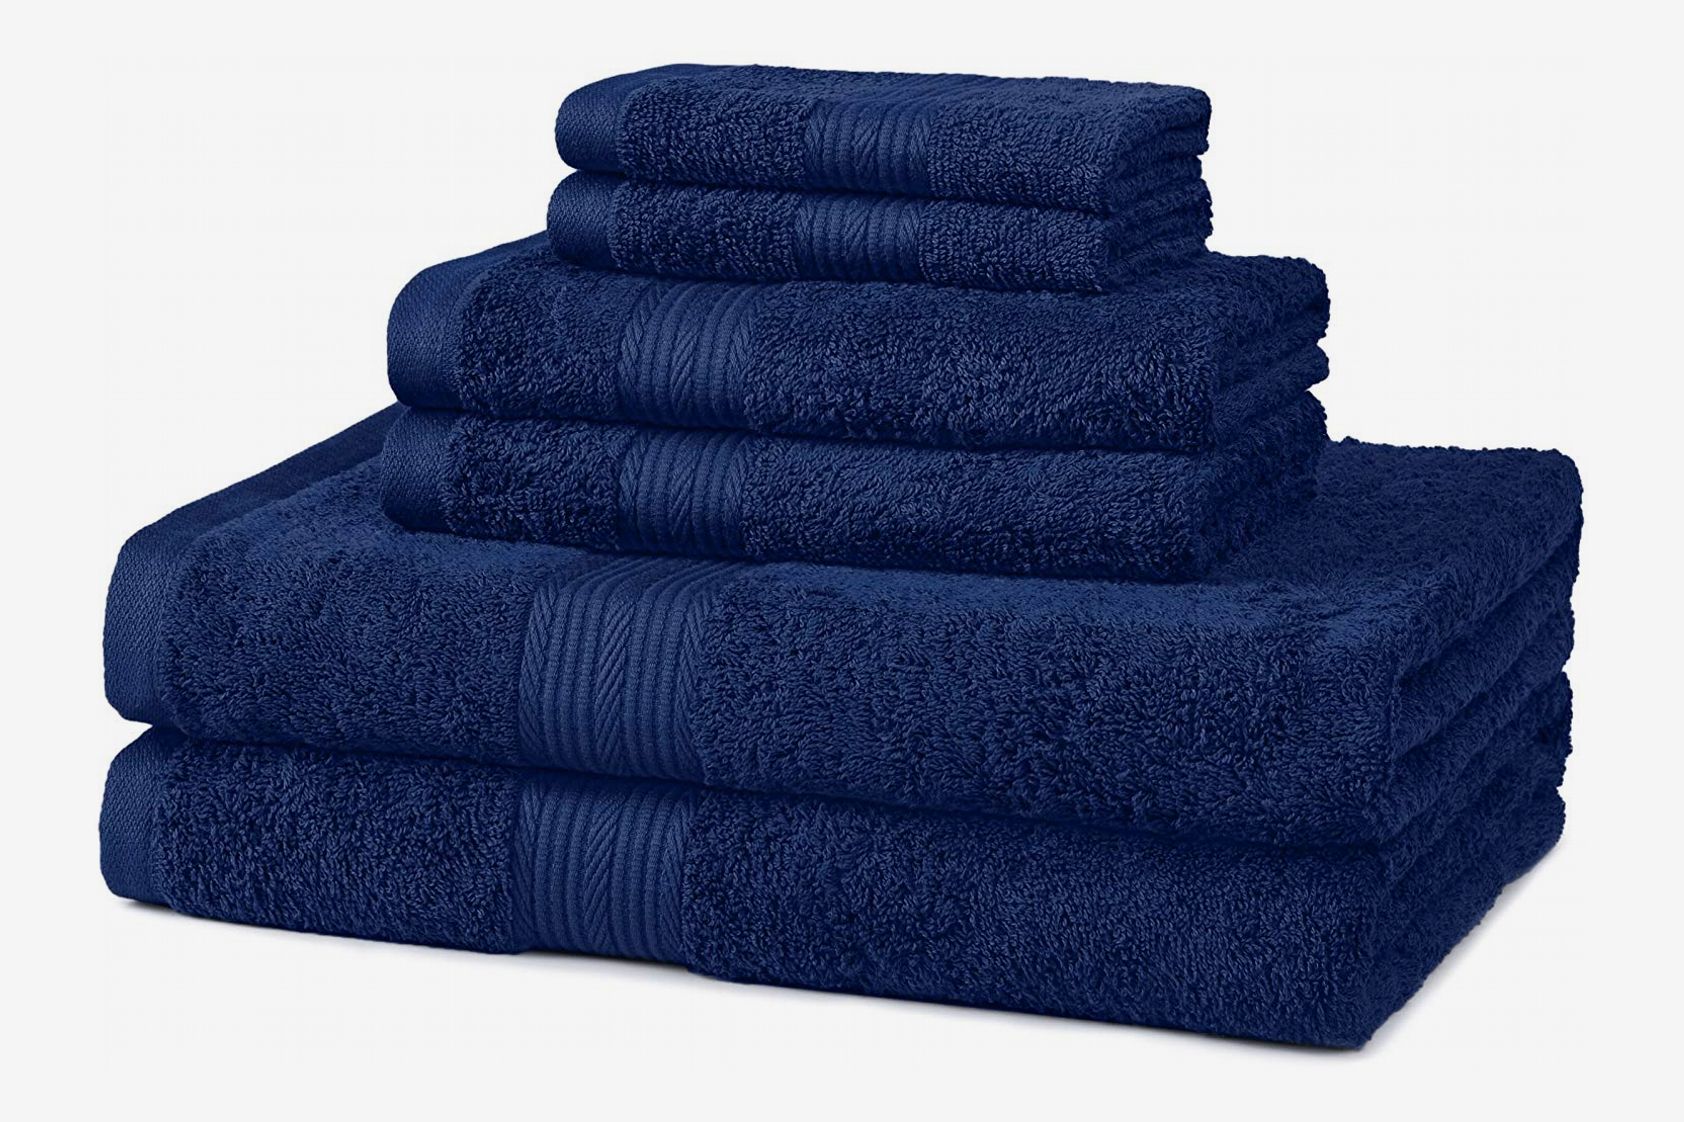 BareSkin Towel Go Towel Light Blue GO TOWEL LIGHT BLUE 